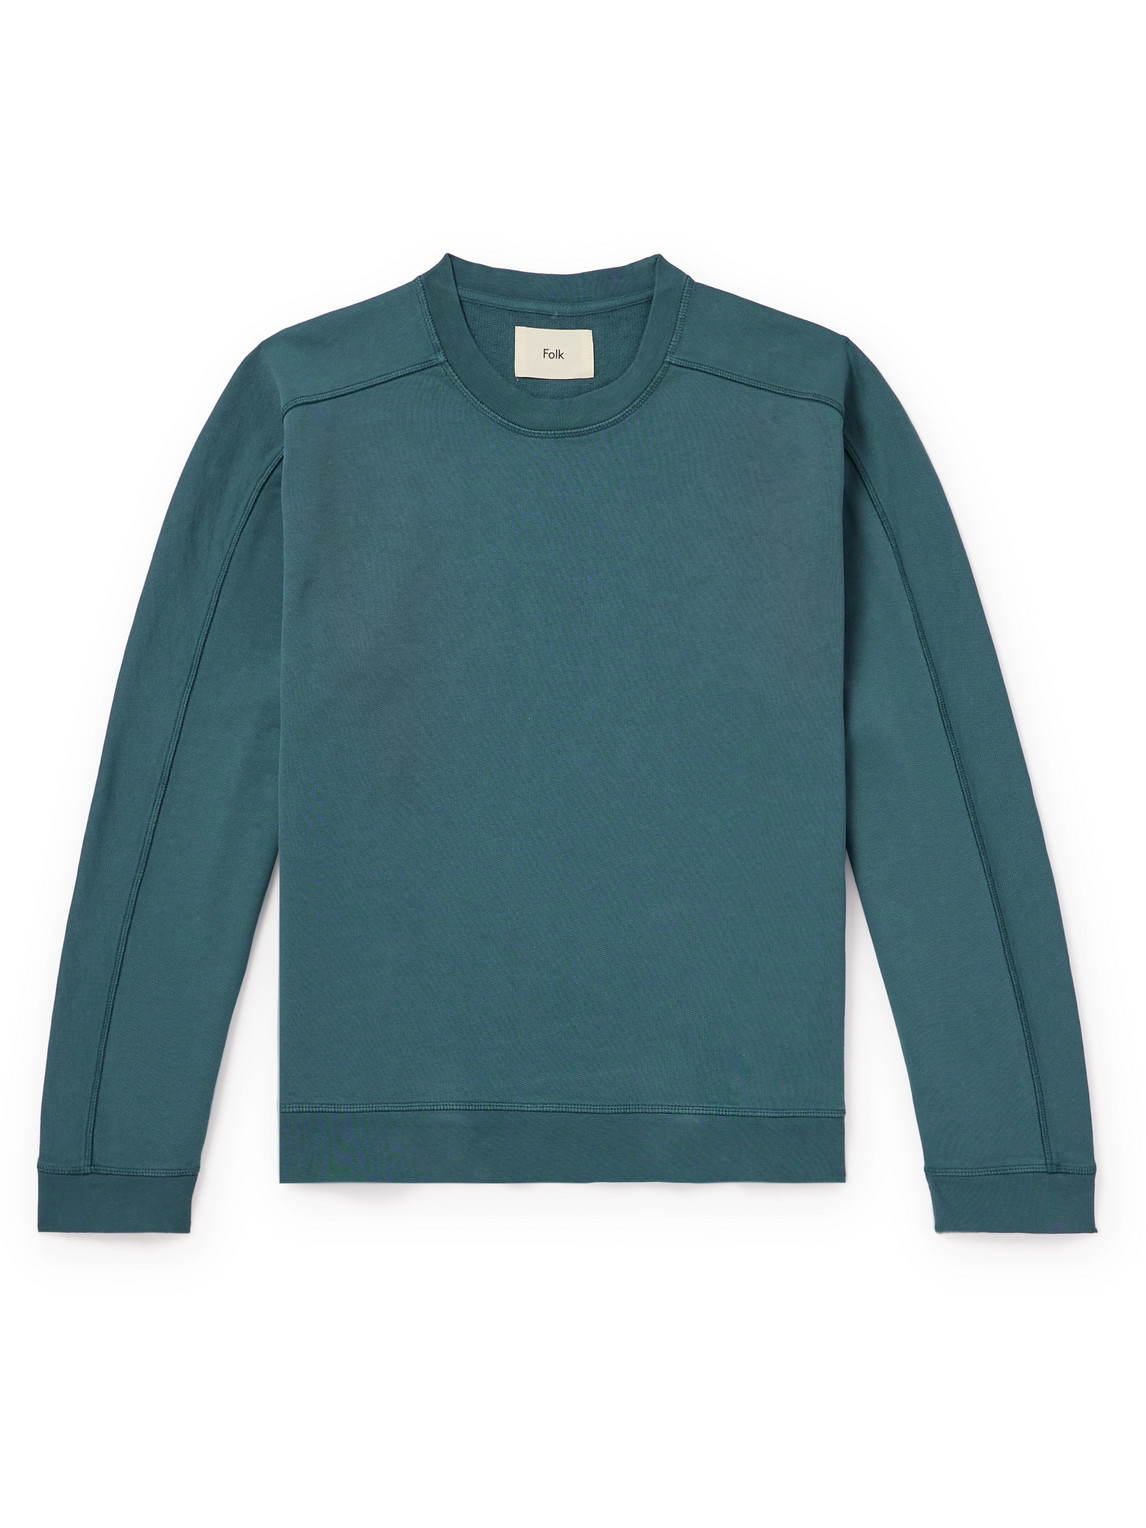 Folk Prism Embroidered Cotton-jersey Sweatshirt In Blue